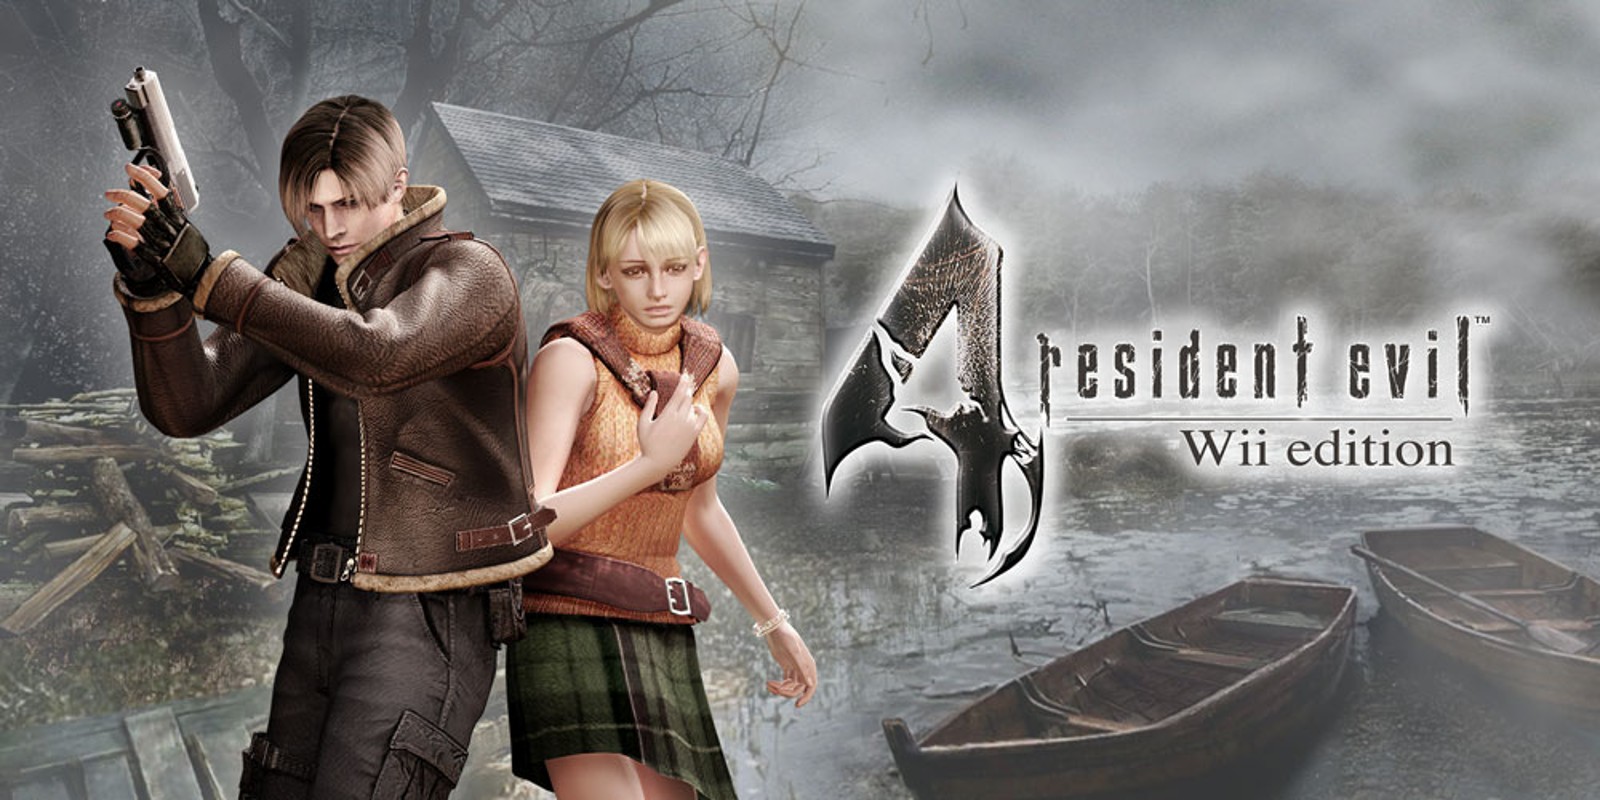 Прохождение игры Resident Evil 4 - Ultimate HD Edition # 35 (Русская версия игры) PC - Ver. HD Full.